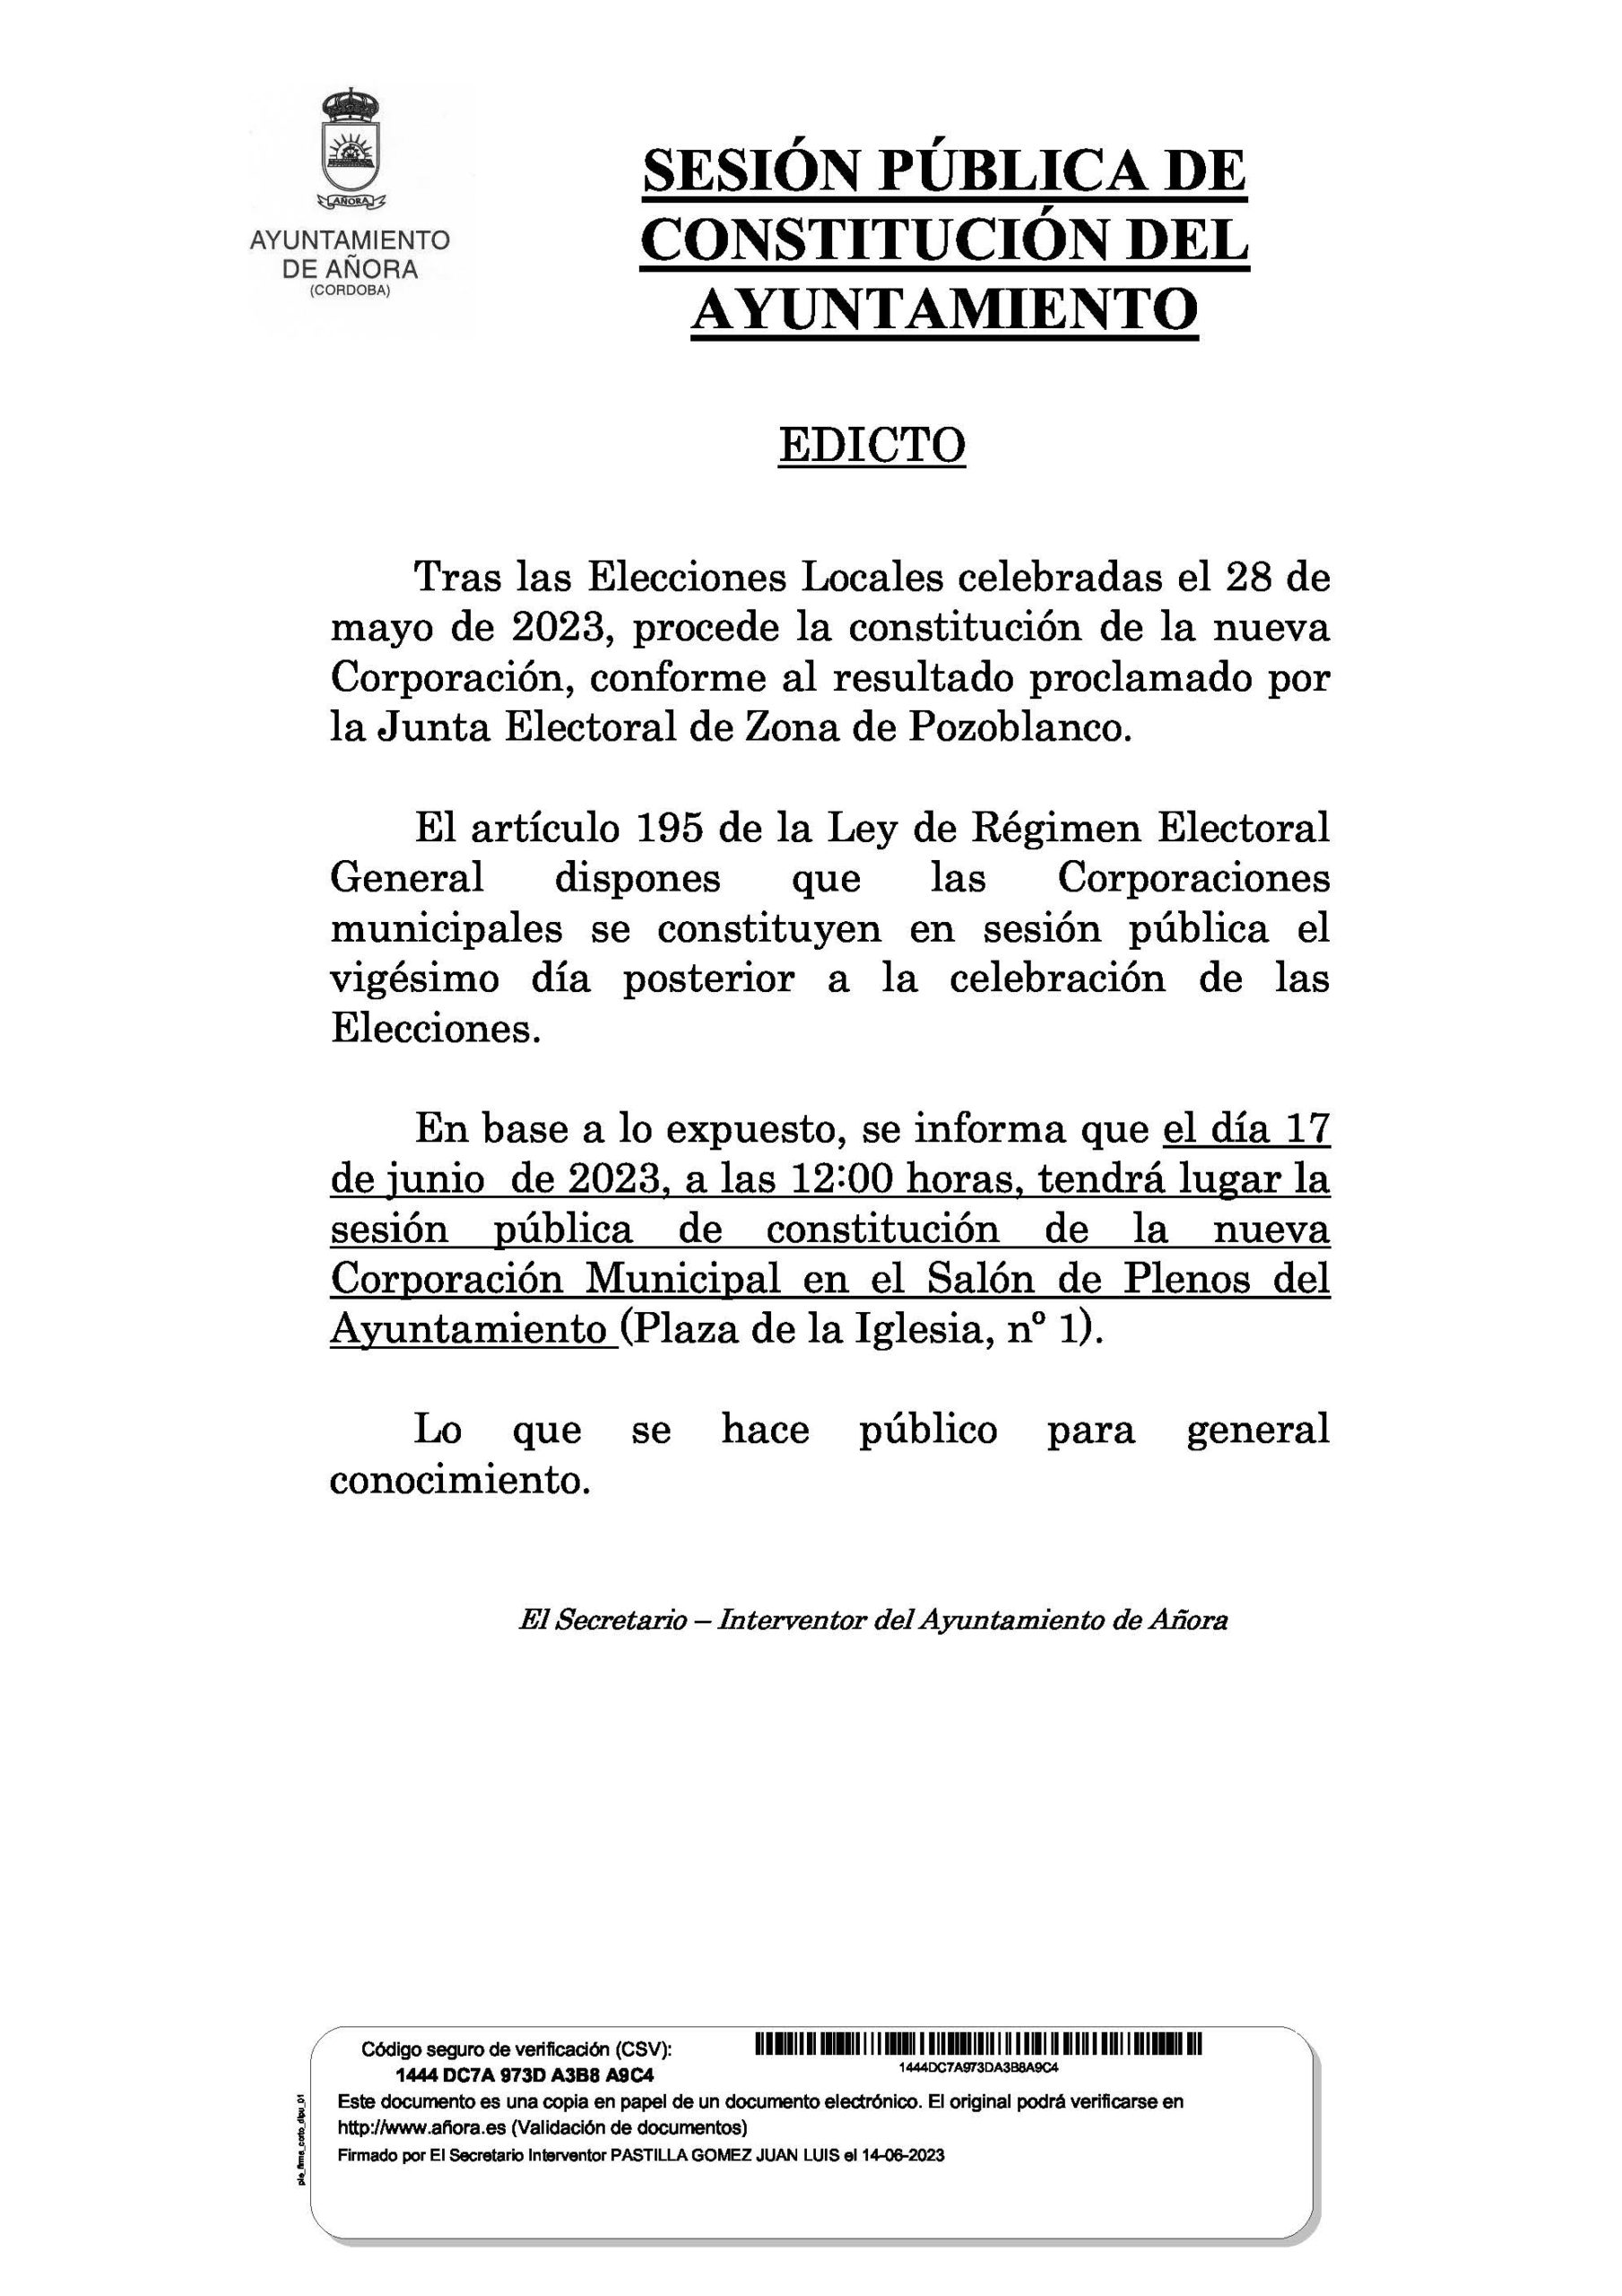 ANUNCIO SESION PUBLICA DE CONSTITUCION DE AYUNTAMIENTO